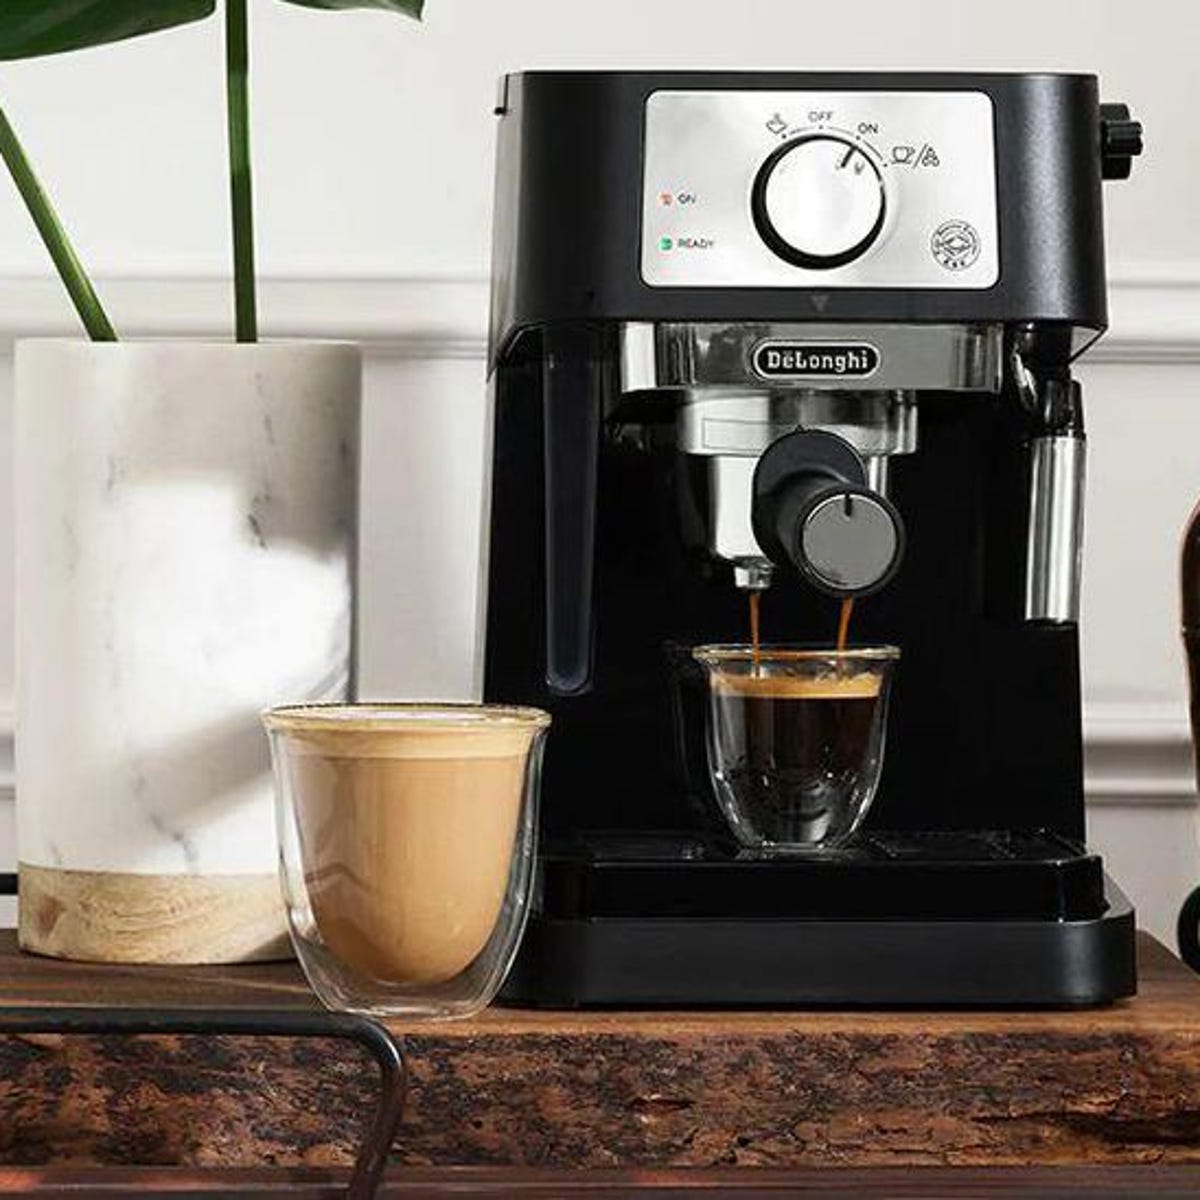 Graveren Modderig Kwadrant Best cheap espresso machine 2022: Save money, brew at home | ZDNet